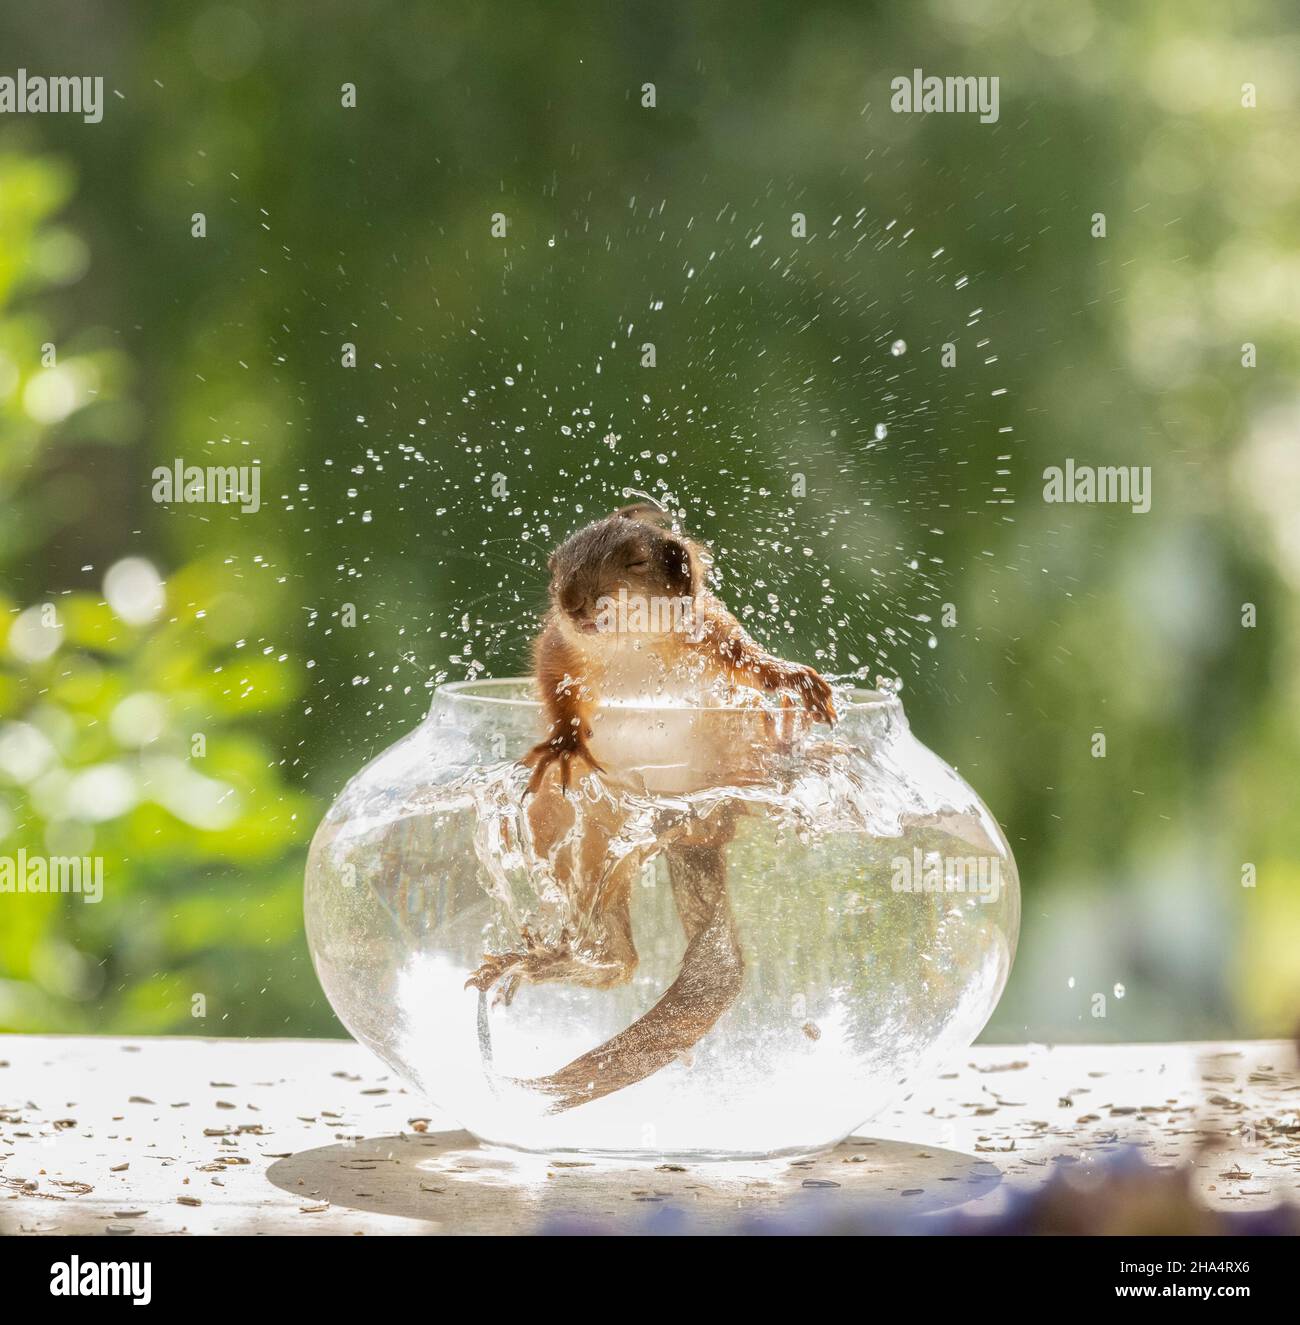 le jeune écureuil rouge secoue l'eau d'un bol à poisson Banque D'Images